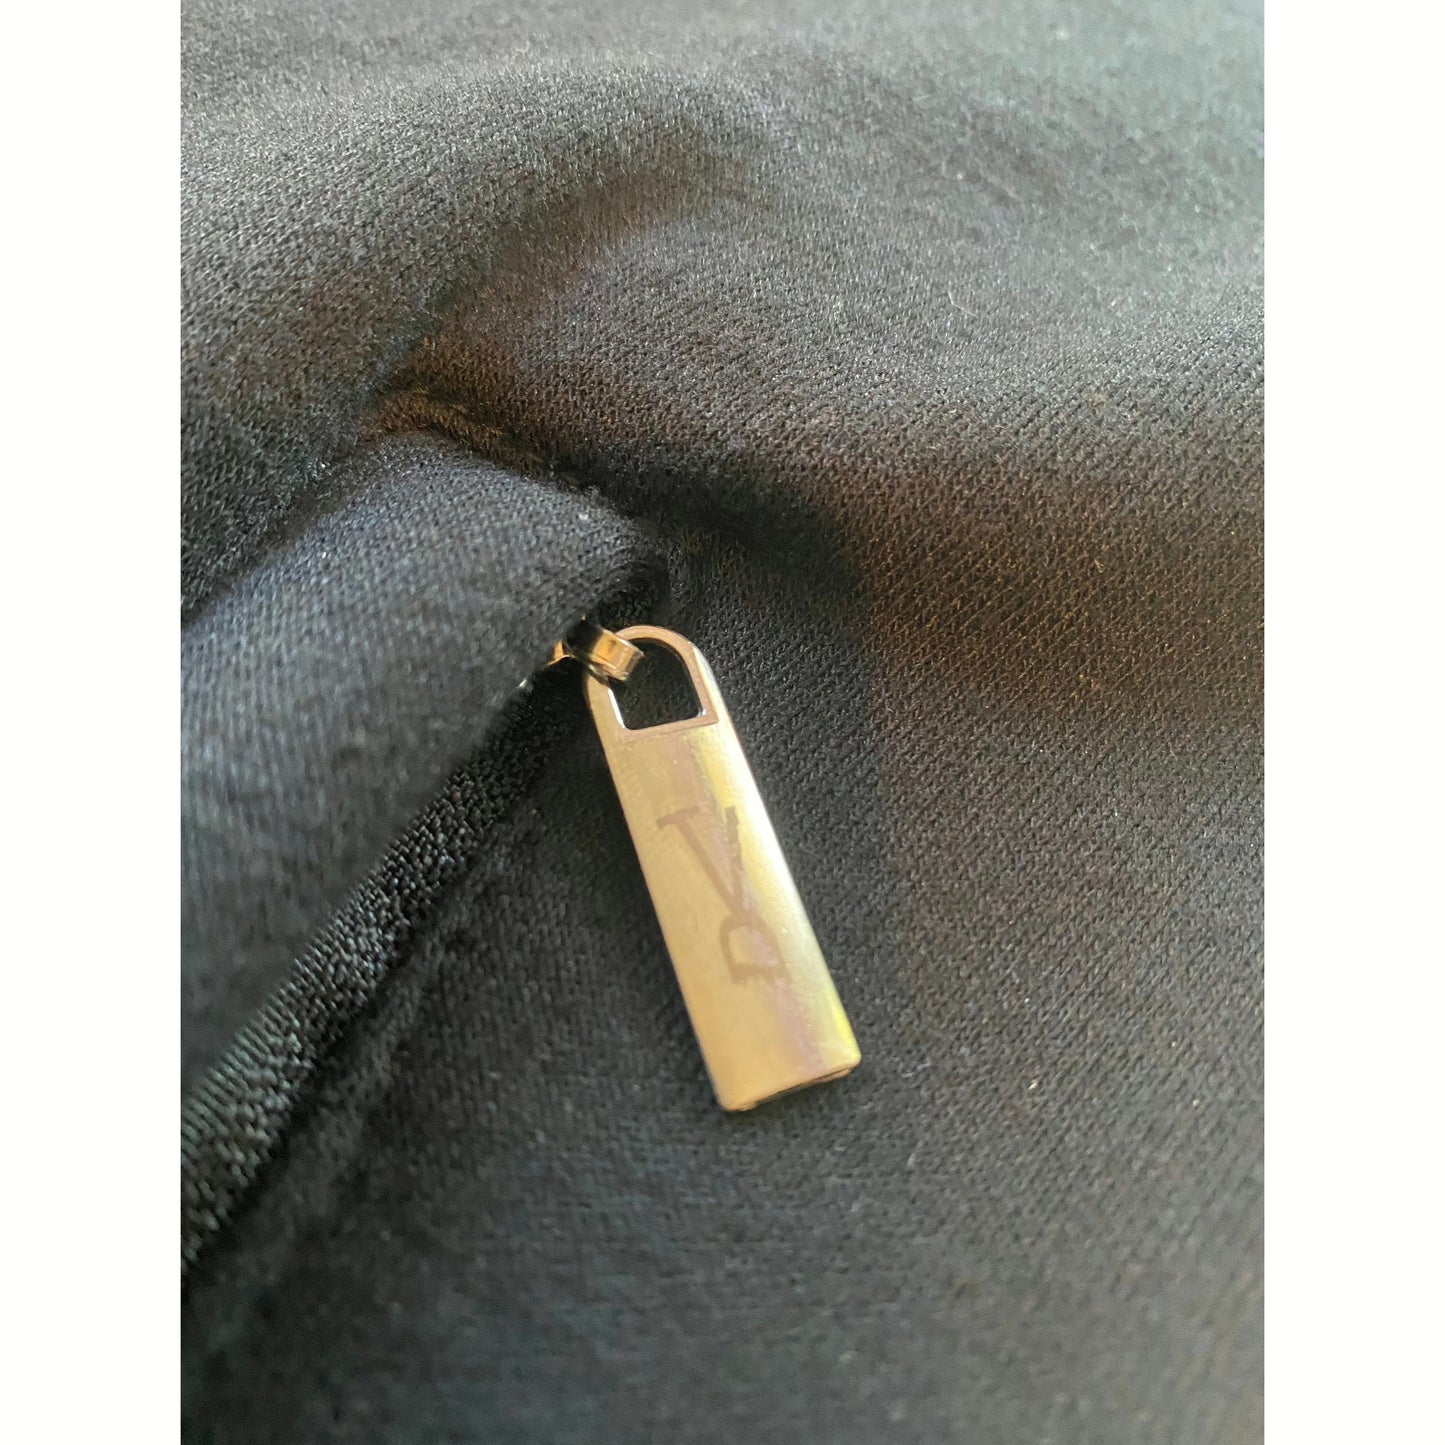 Laser design zipper 